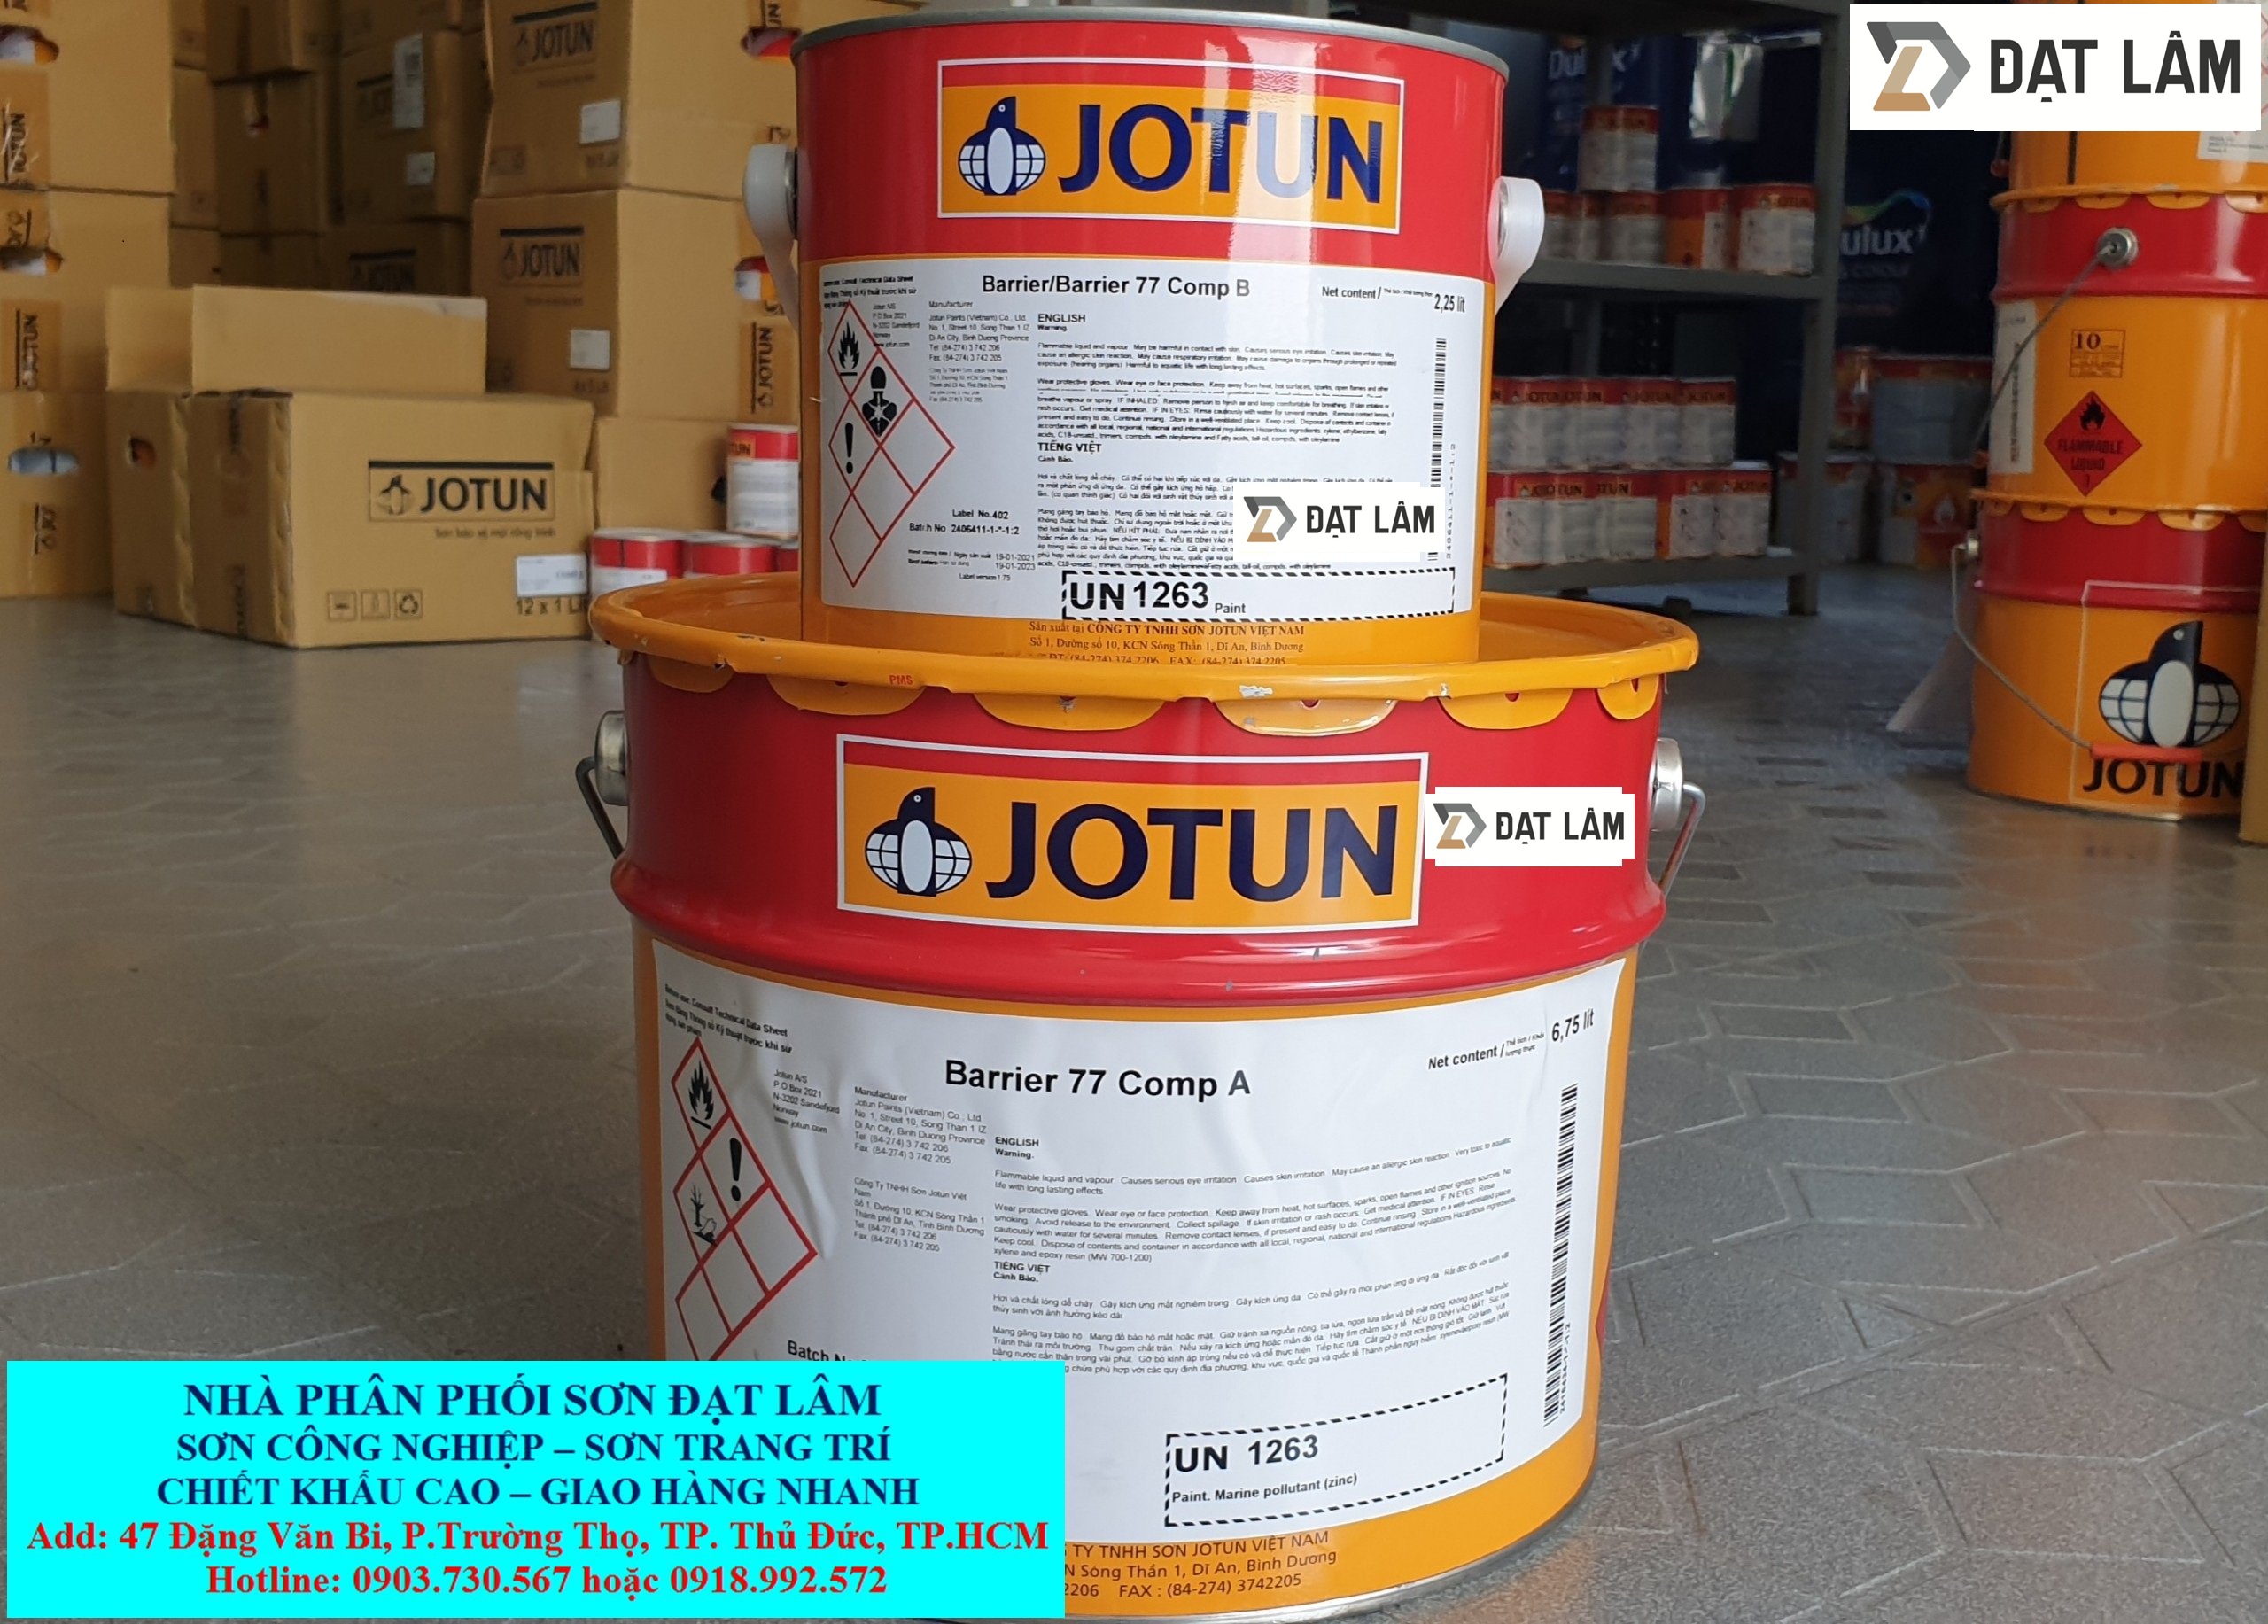 Sơn Jotun Barrier 77 đóng thùng 9L: Chọn sơn Jotun Barrier 77 đóng thùng 9L để tiết kiệm hơn và tiện lợi hơn cho việc sơn nhiều bề mặt lớn. Công nghệ hiện đại giúp giữ màu sắc và độ bóng lâu dài, mang đến cho bạn sự hài lòng tuyệt đối.